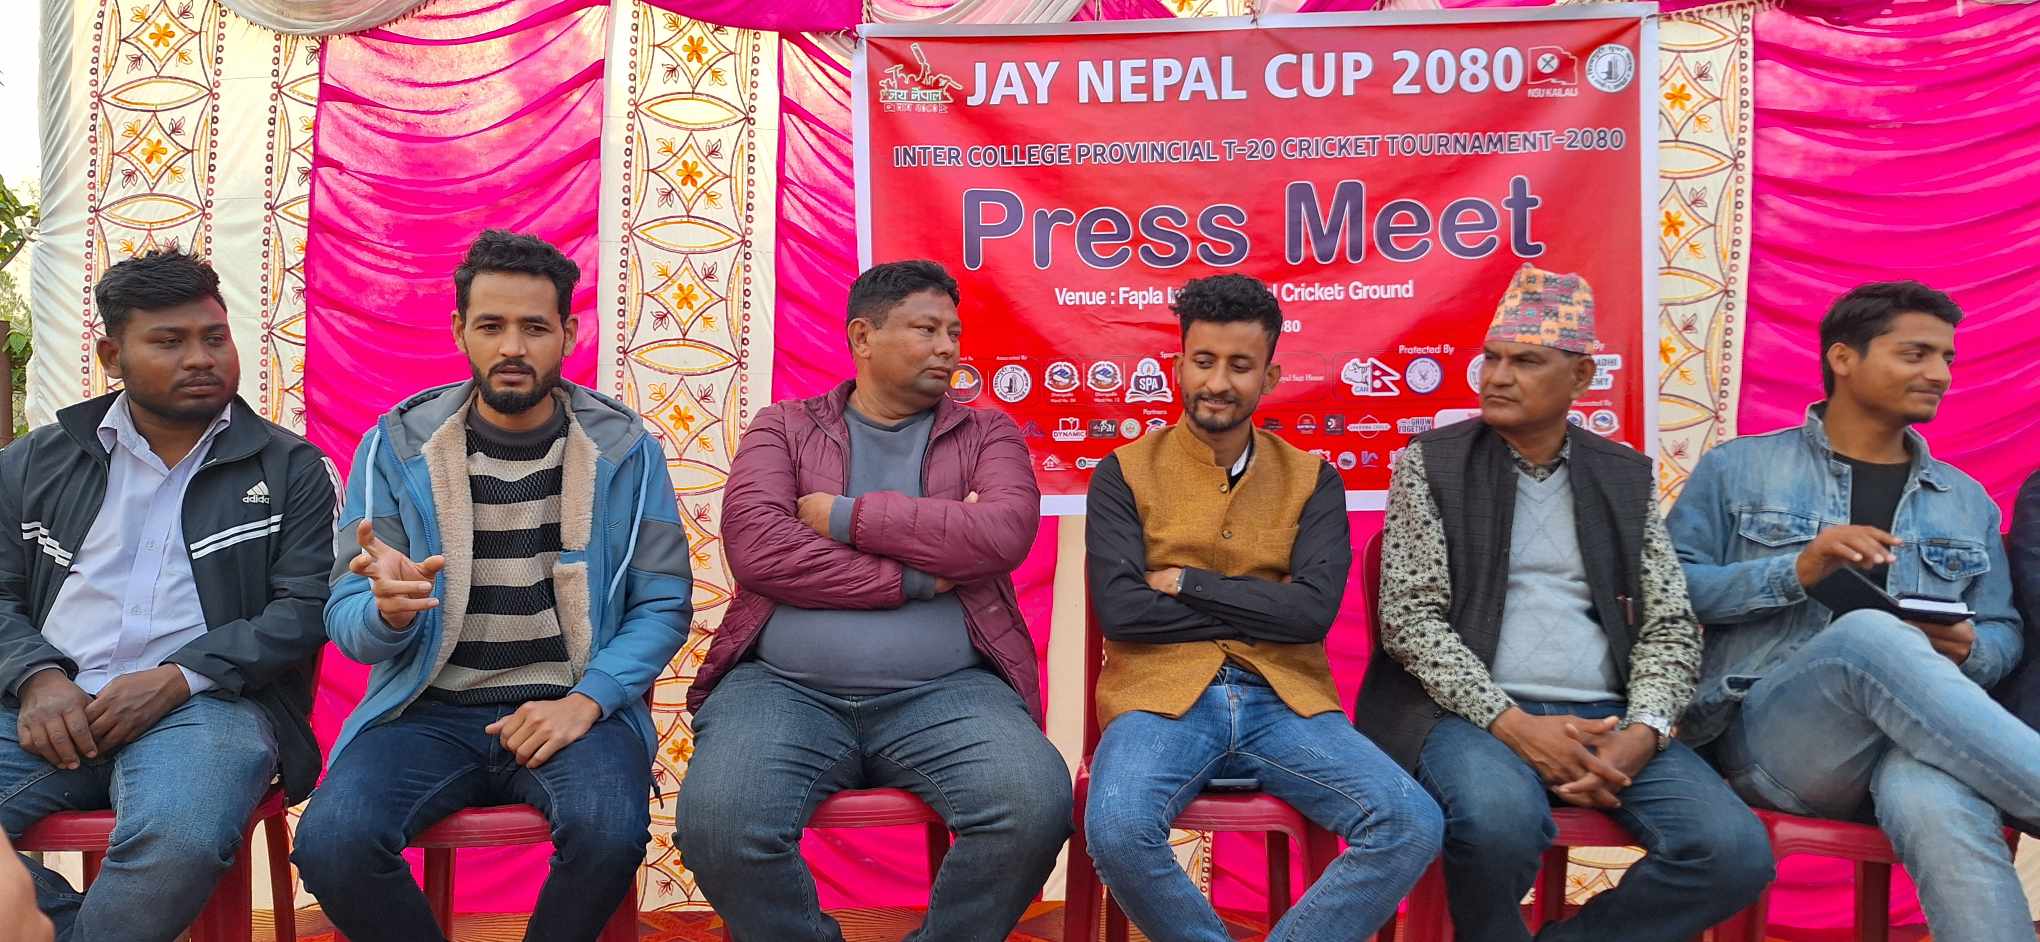 भोलि देखि जय नेपाल कप हुँदै